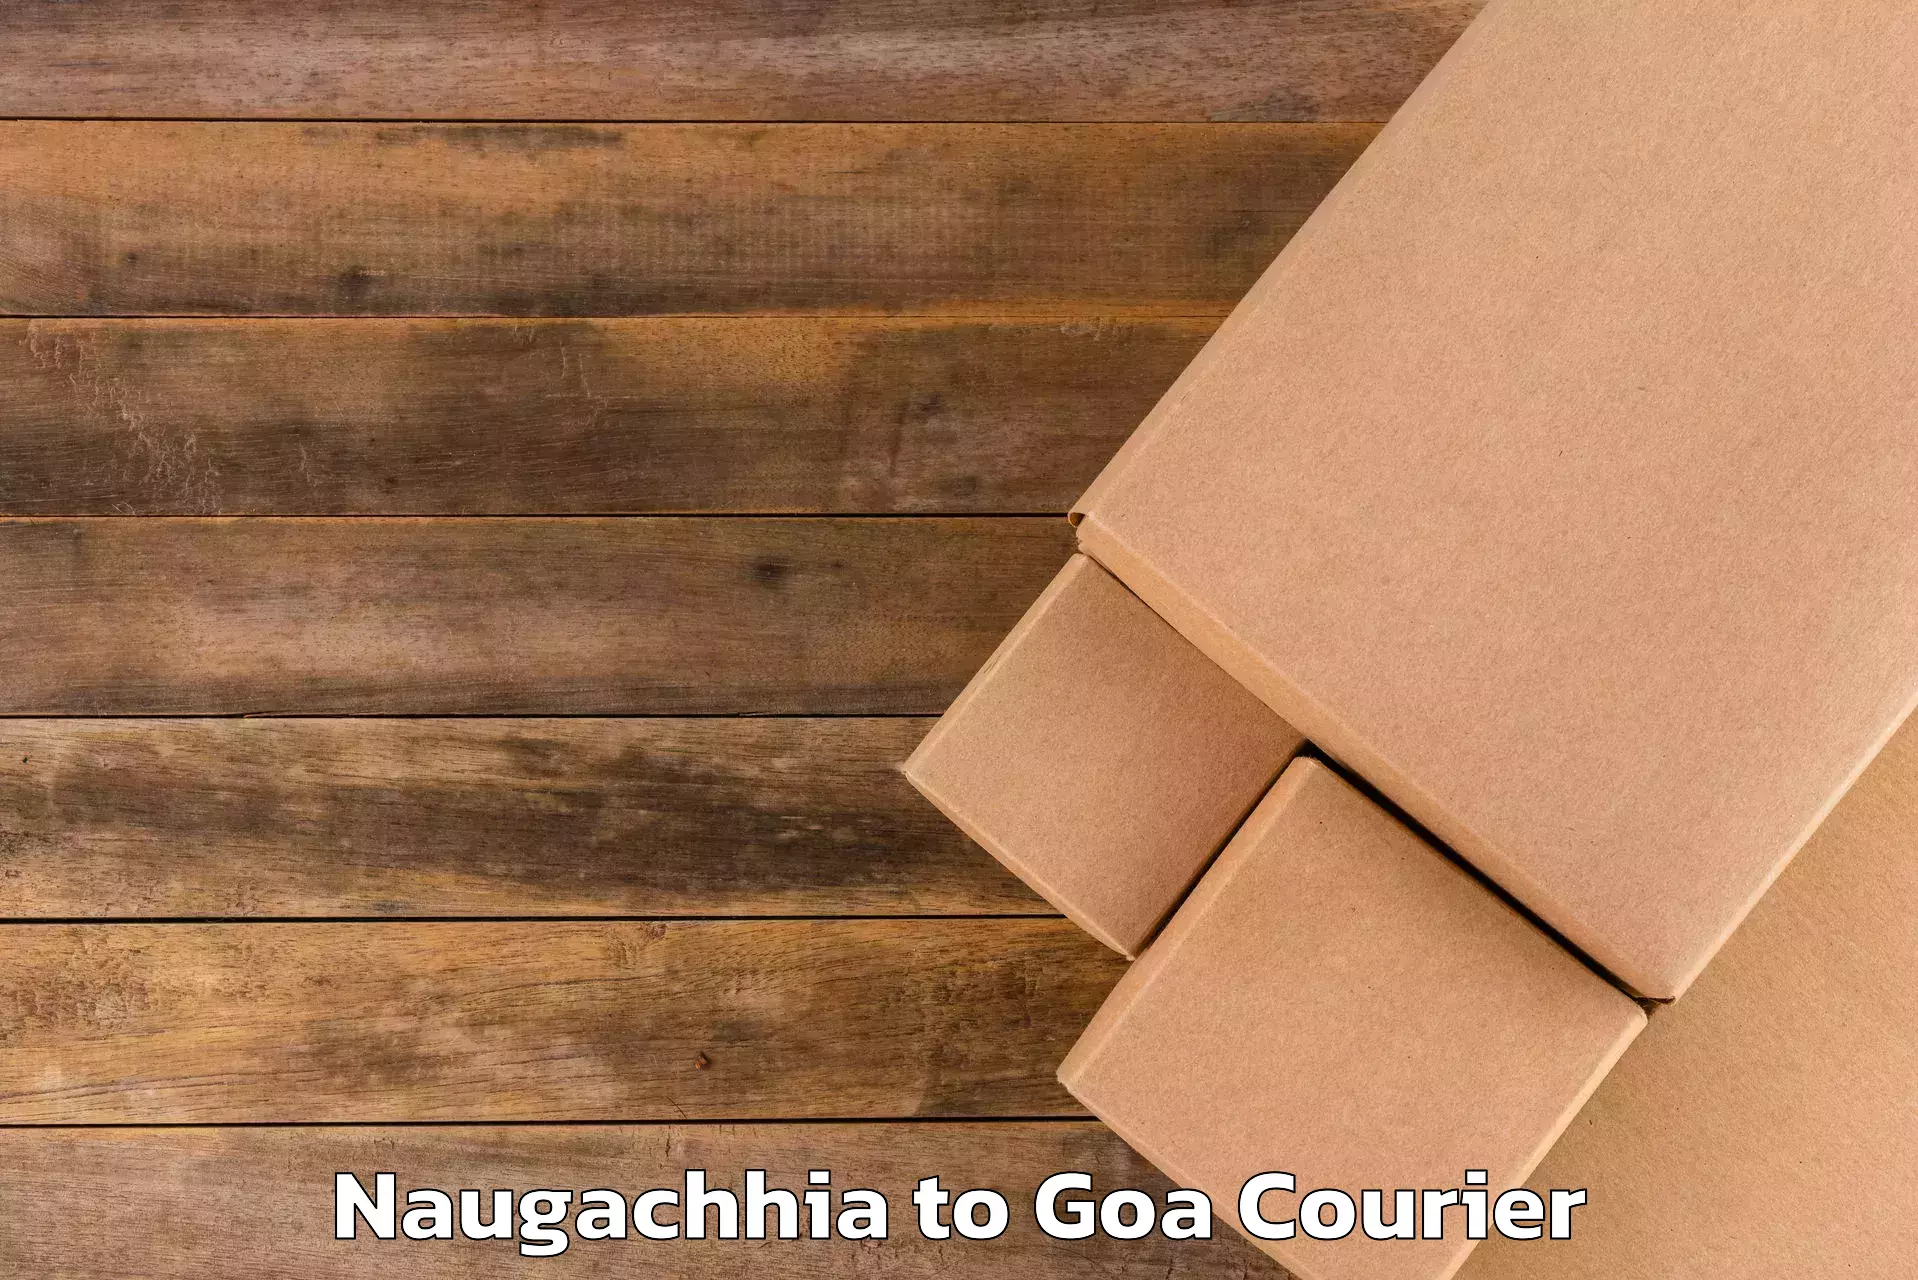 Personal effects shipping Naugachhia to Ponda